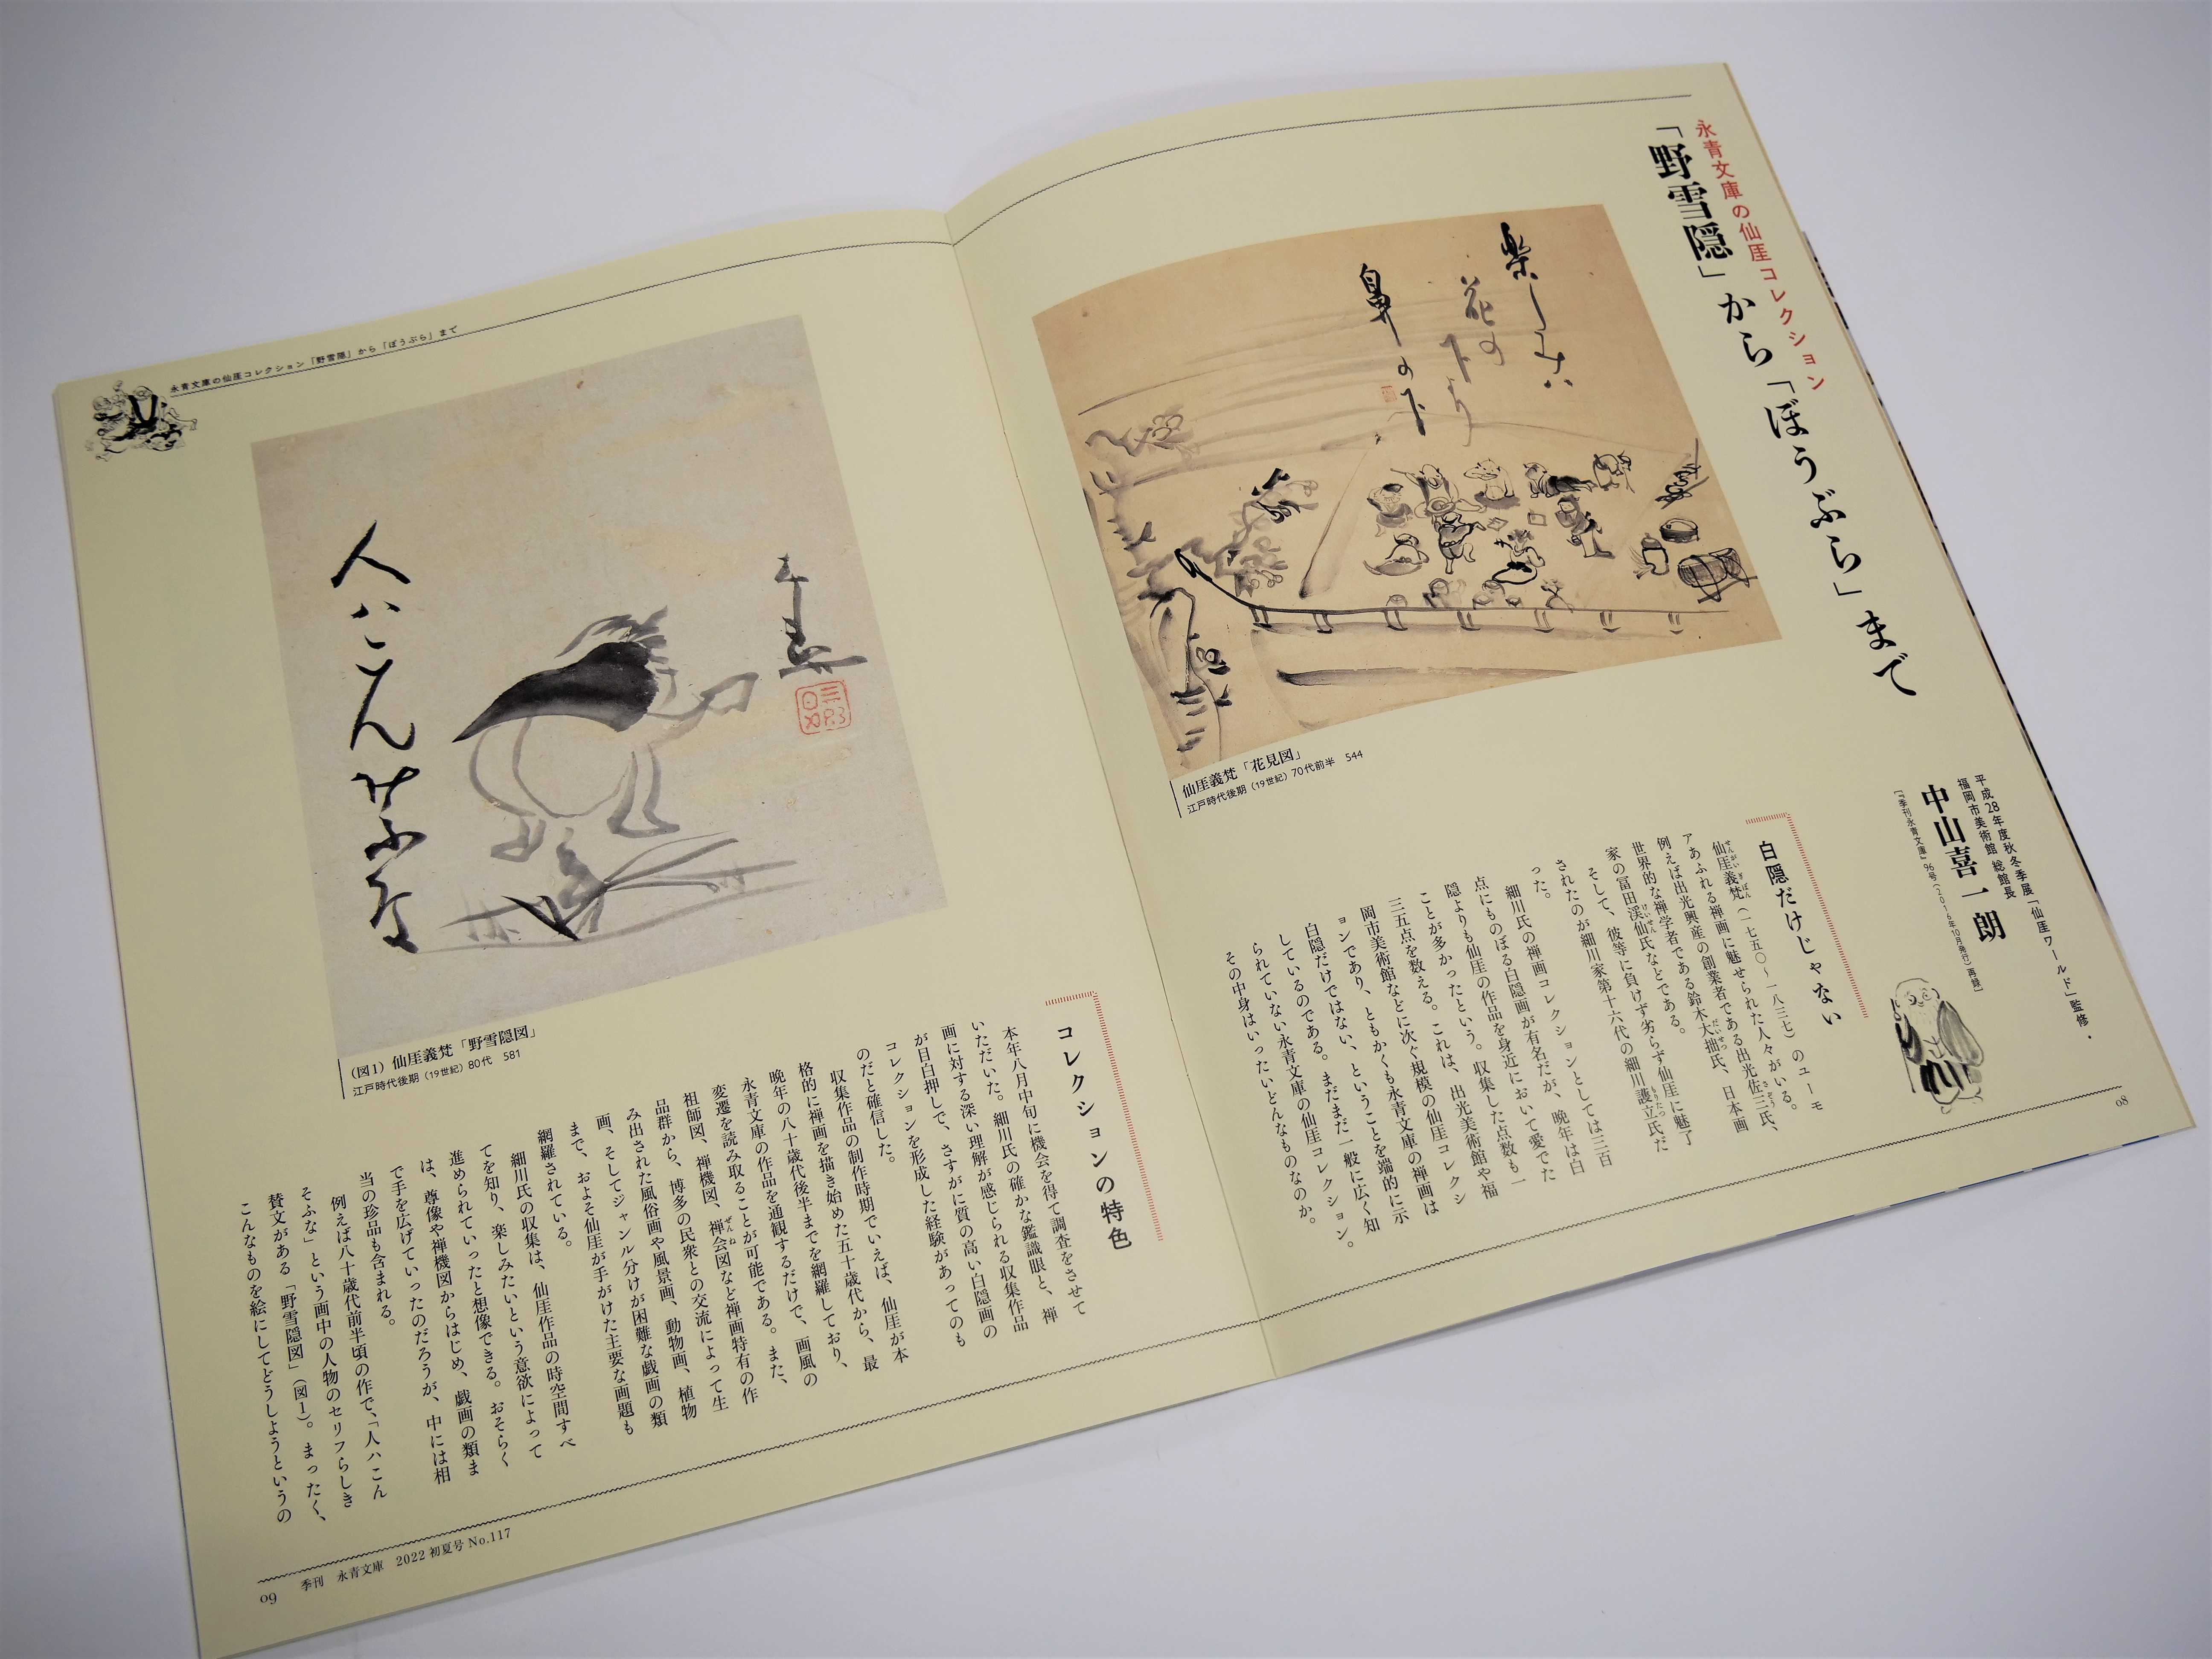 仙厓ワールド—また来て笑って！仙厓さんのZenZen禅画— - 東京印書館 